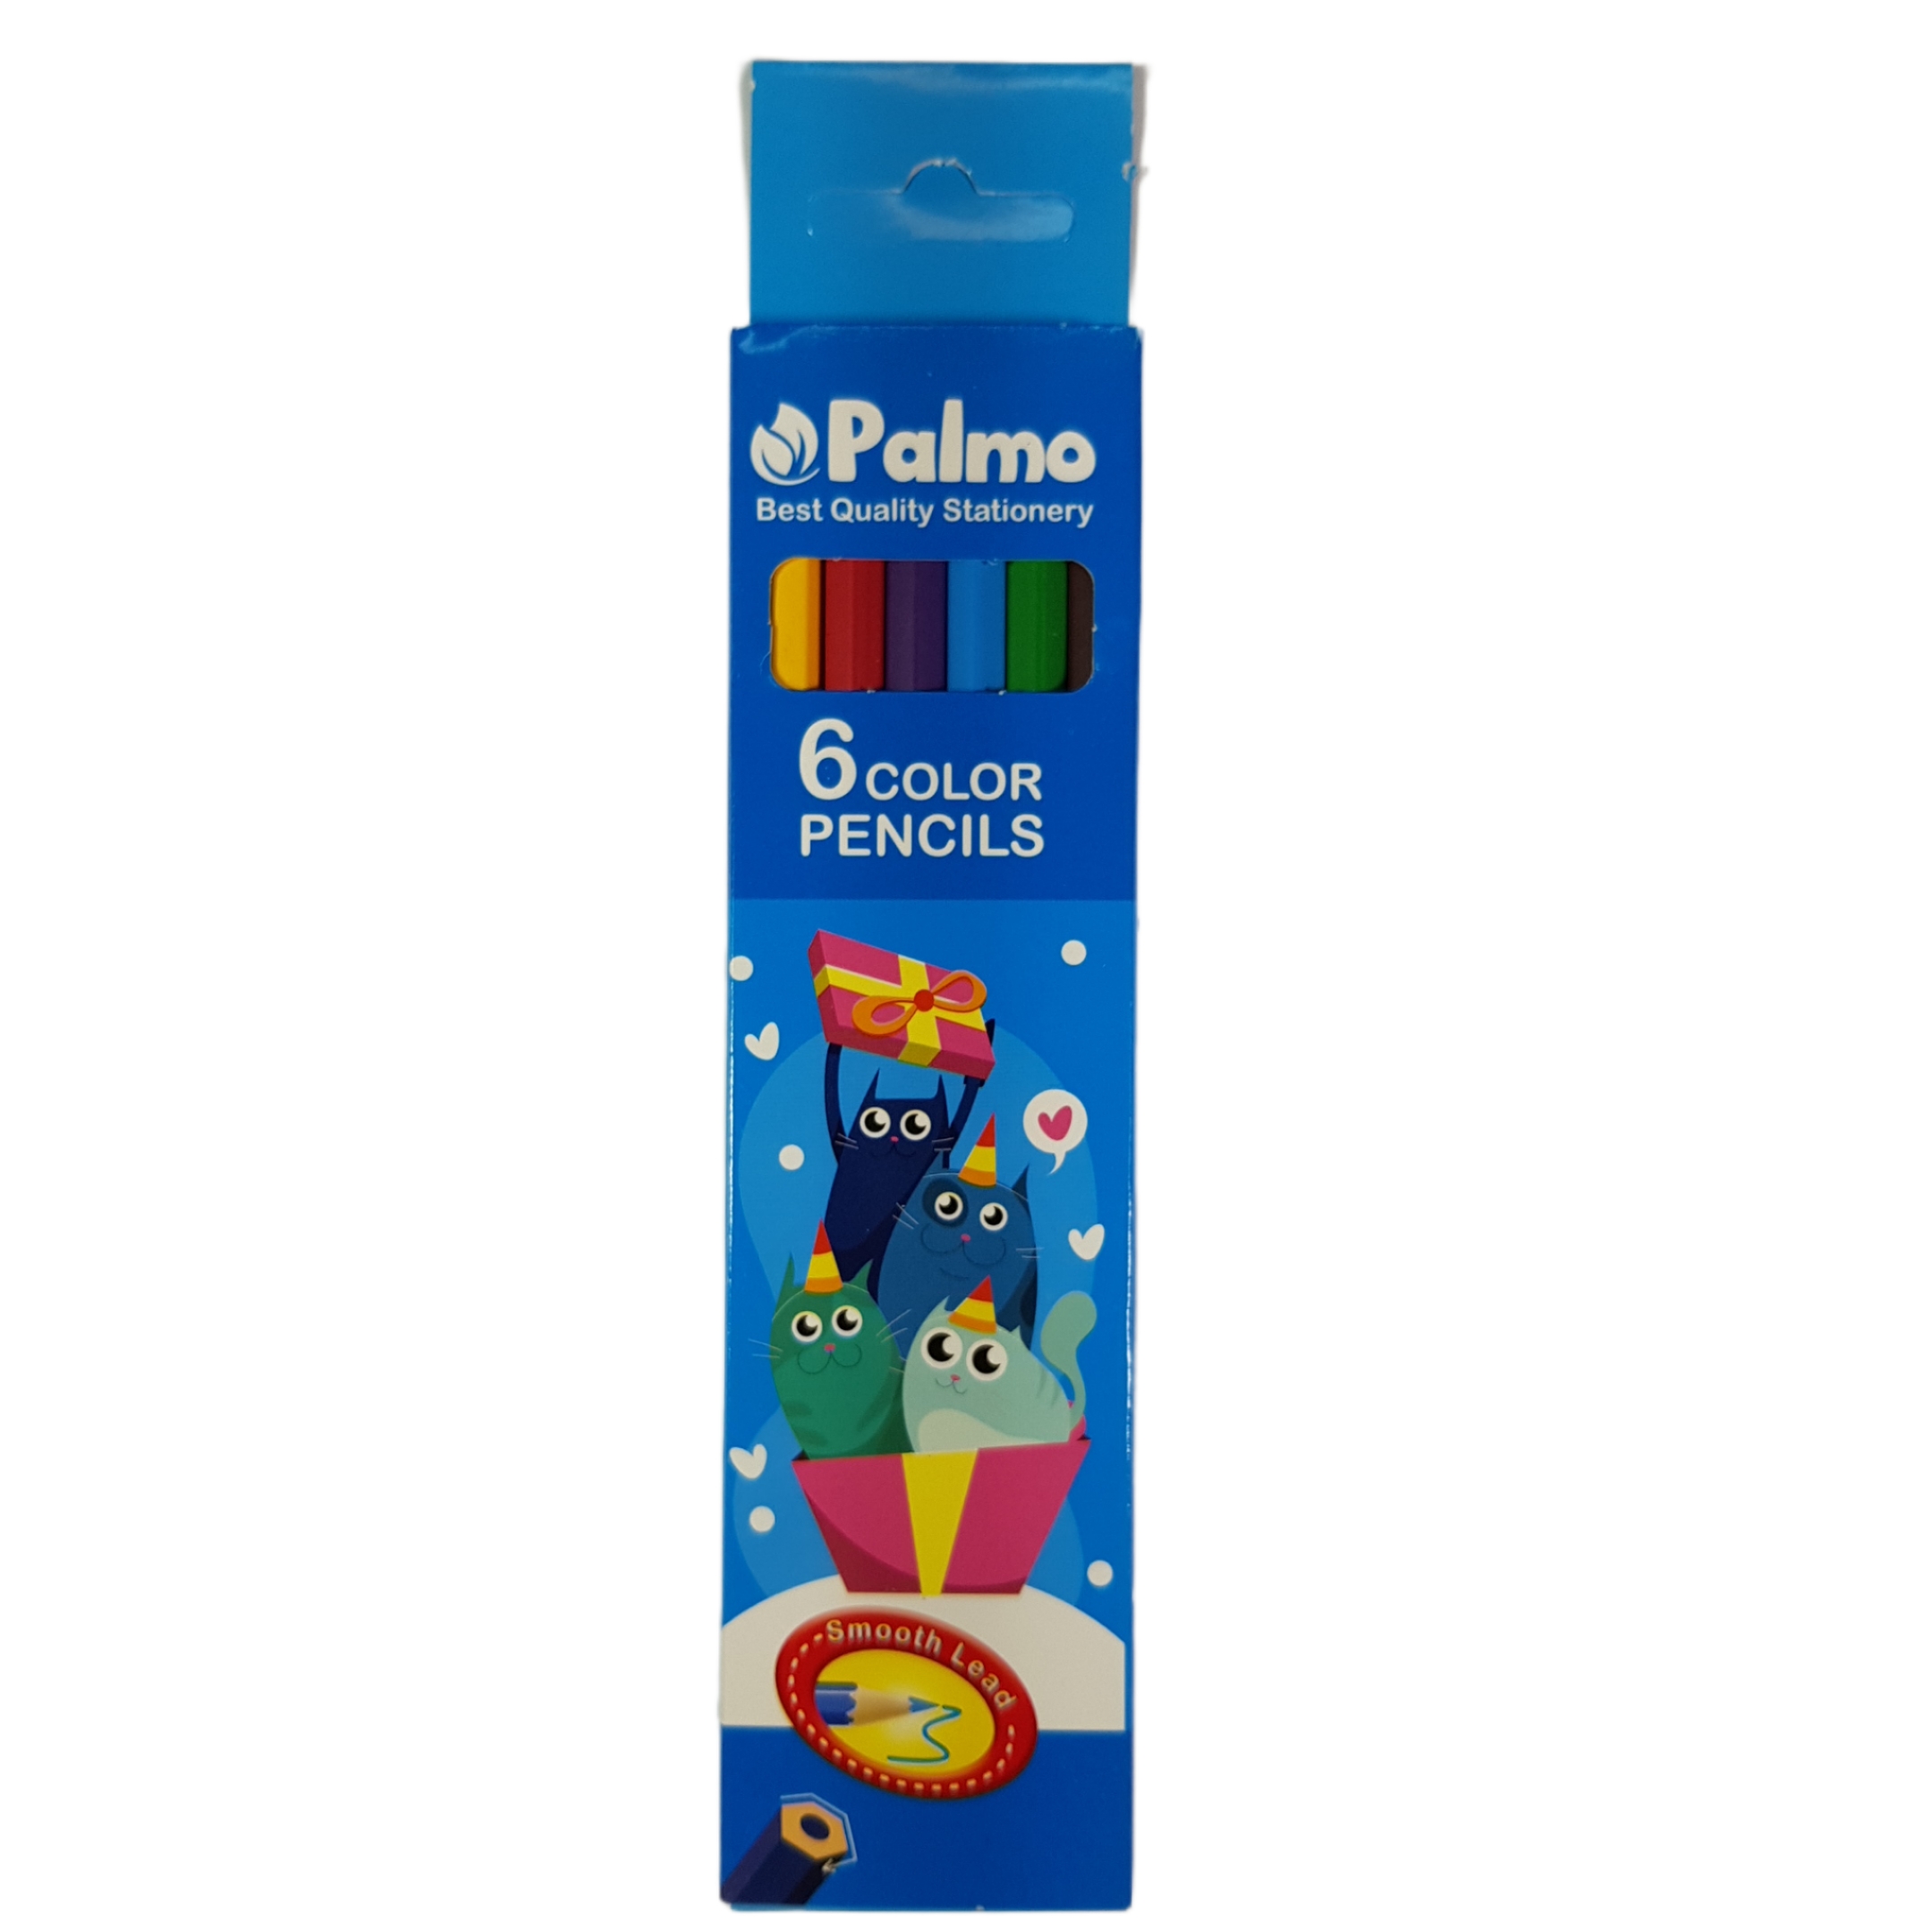 مداد رنگی 6 رنگ پالمو کد 33